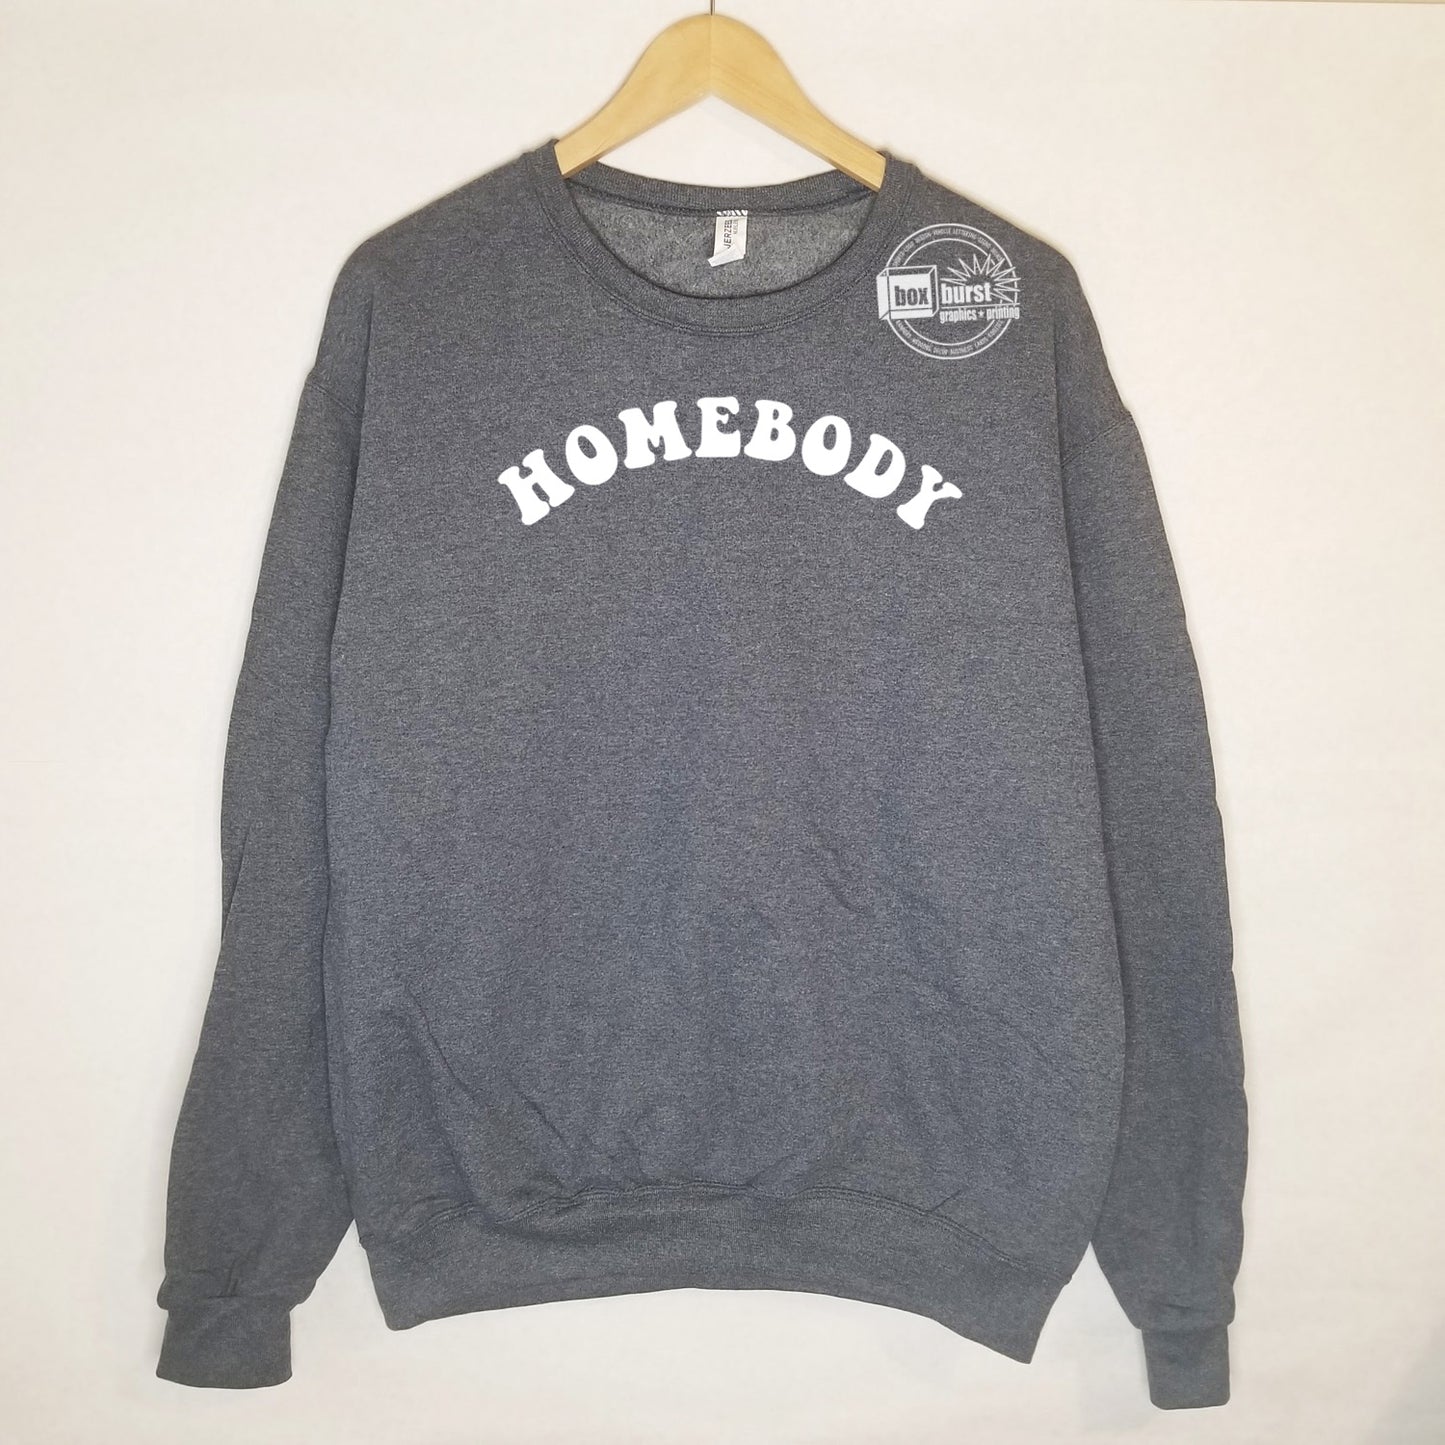 Homebody hippie Crew neck sweater